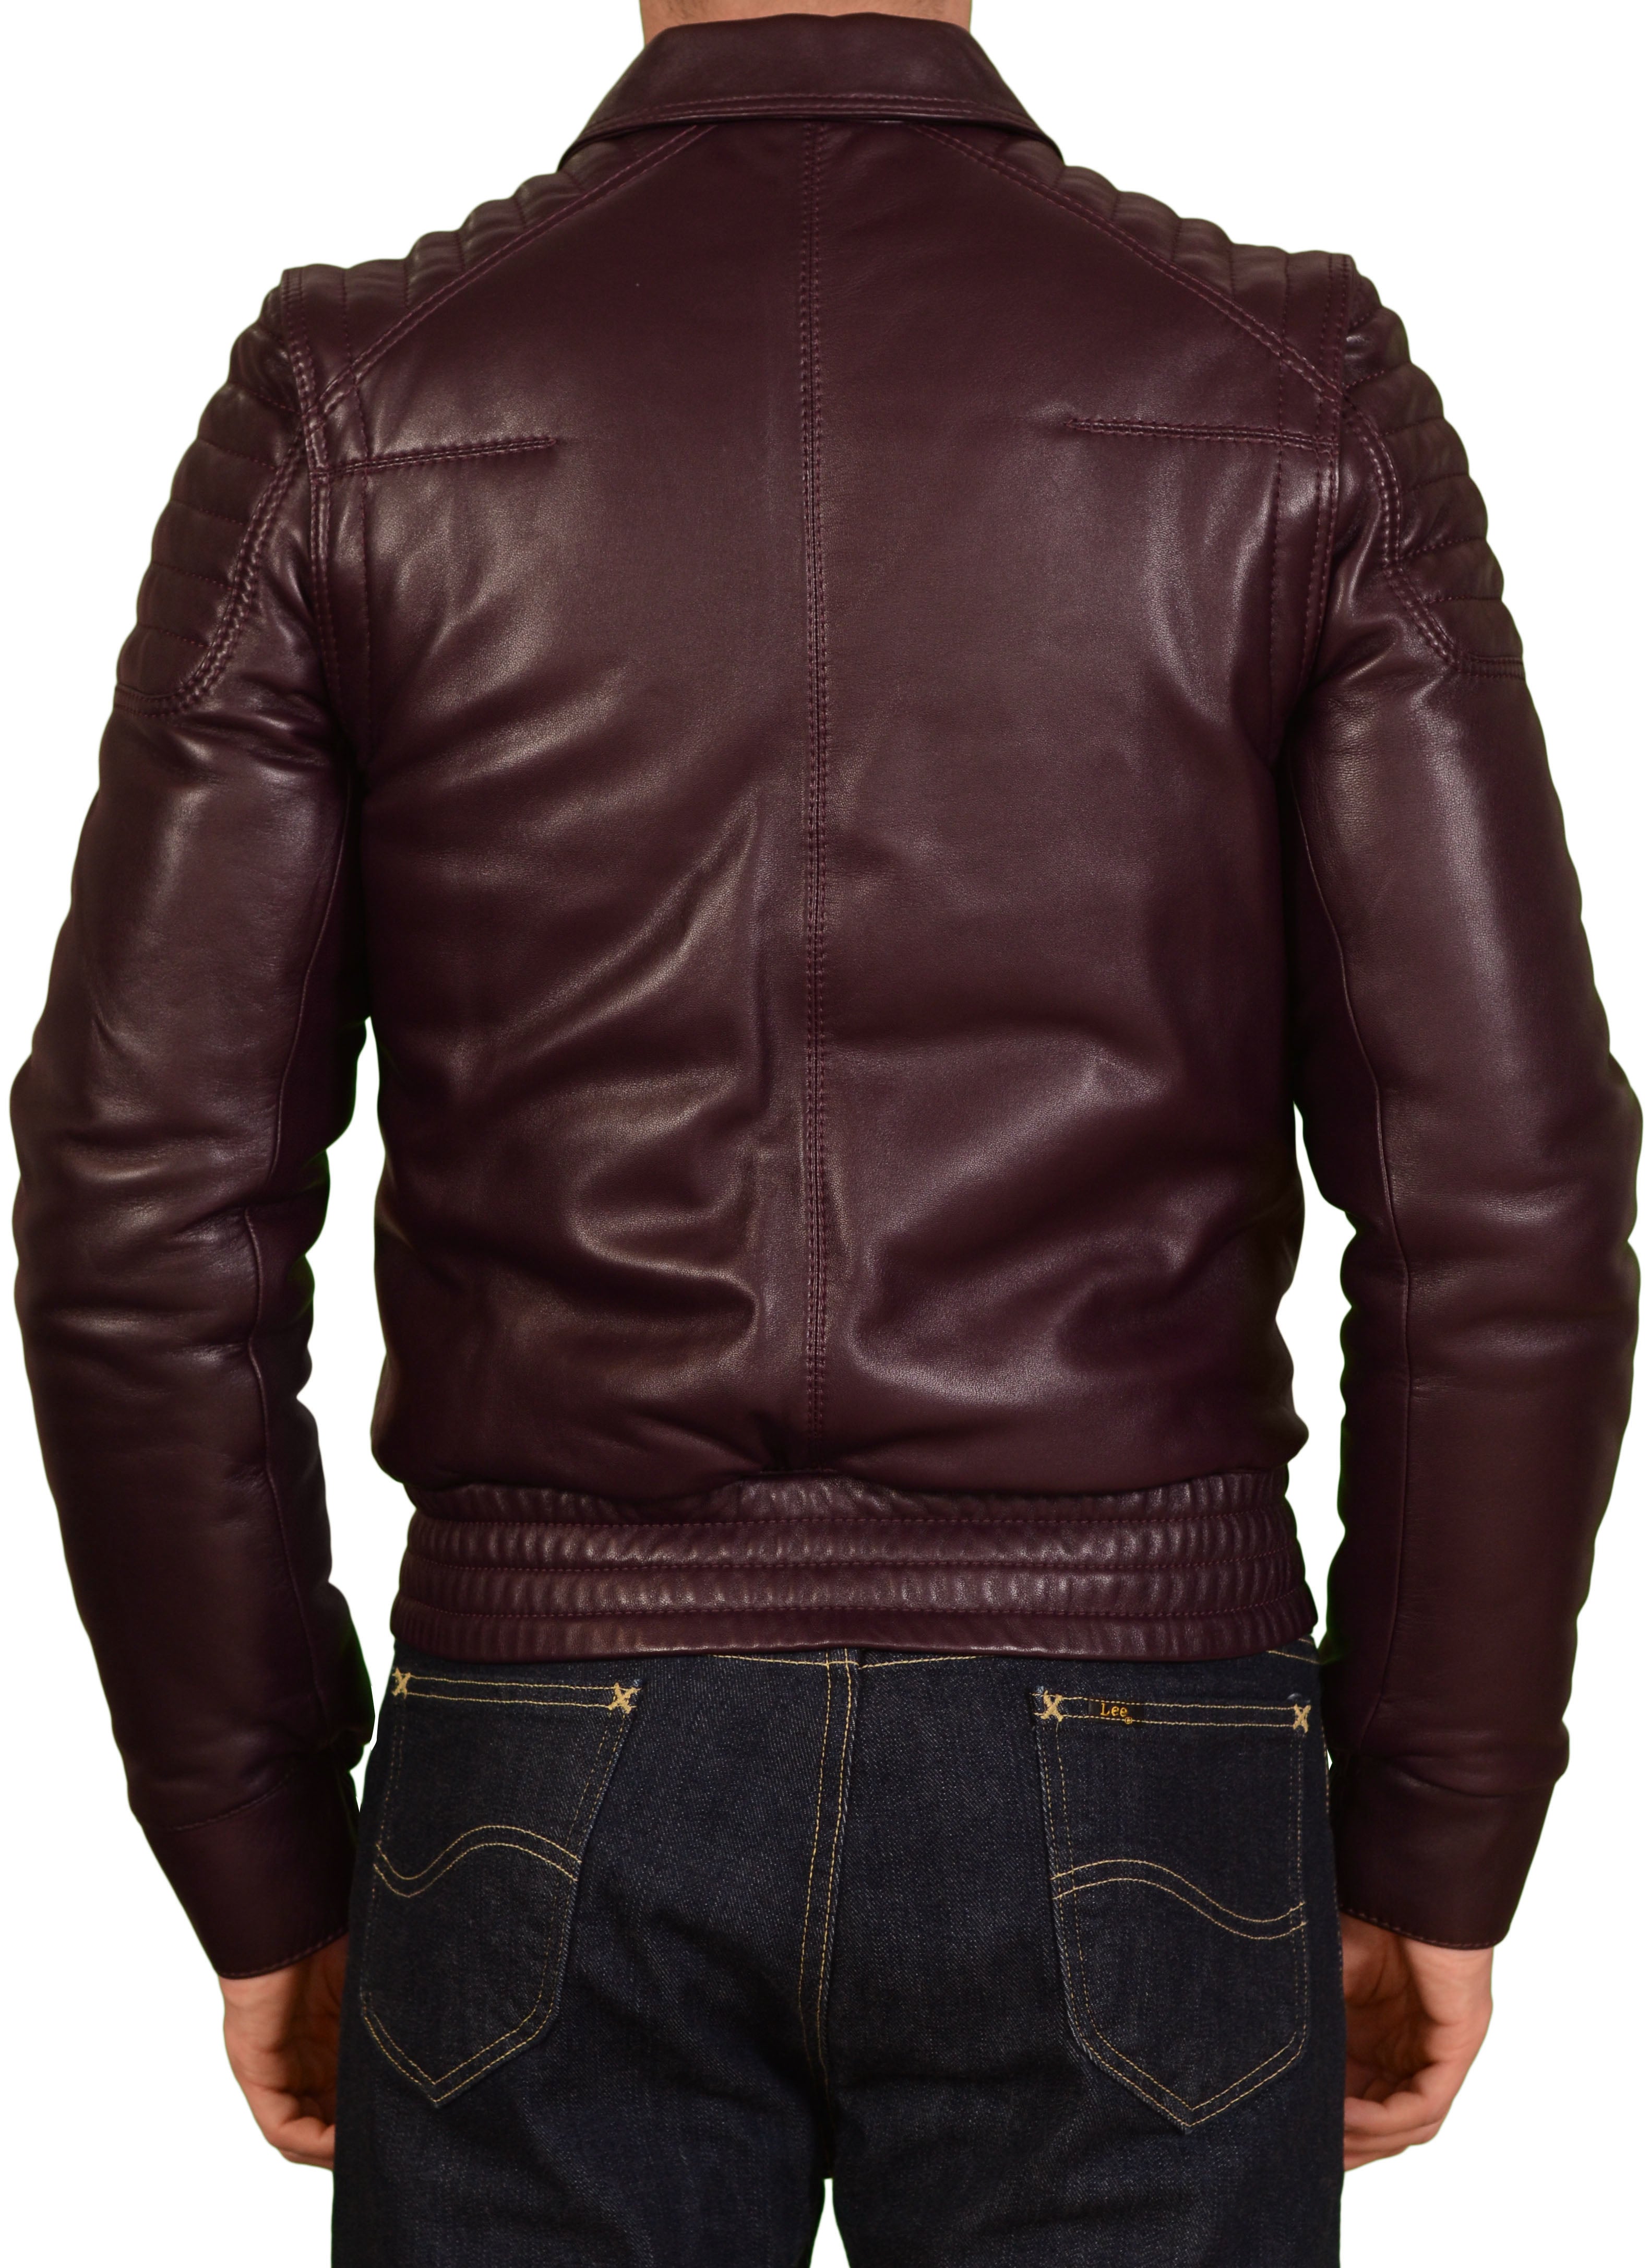 DIOR Homme Burgundy 2 In 1 Leather Padded Biker Jacket Vest 46 US XS 8